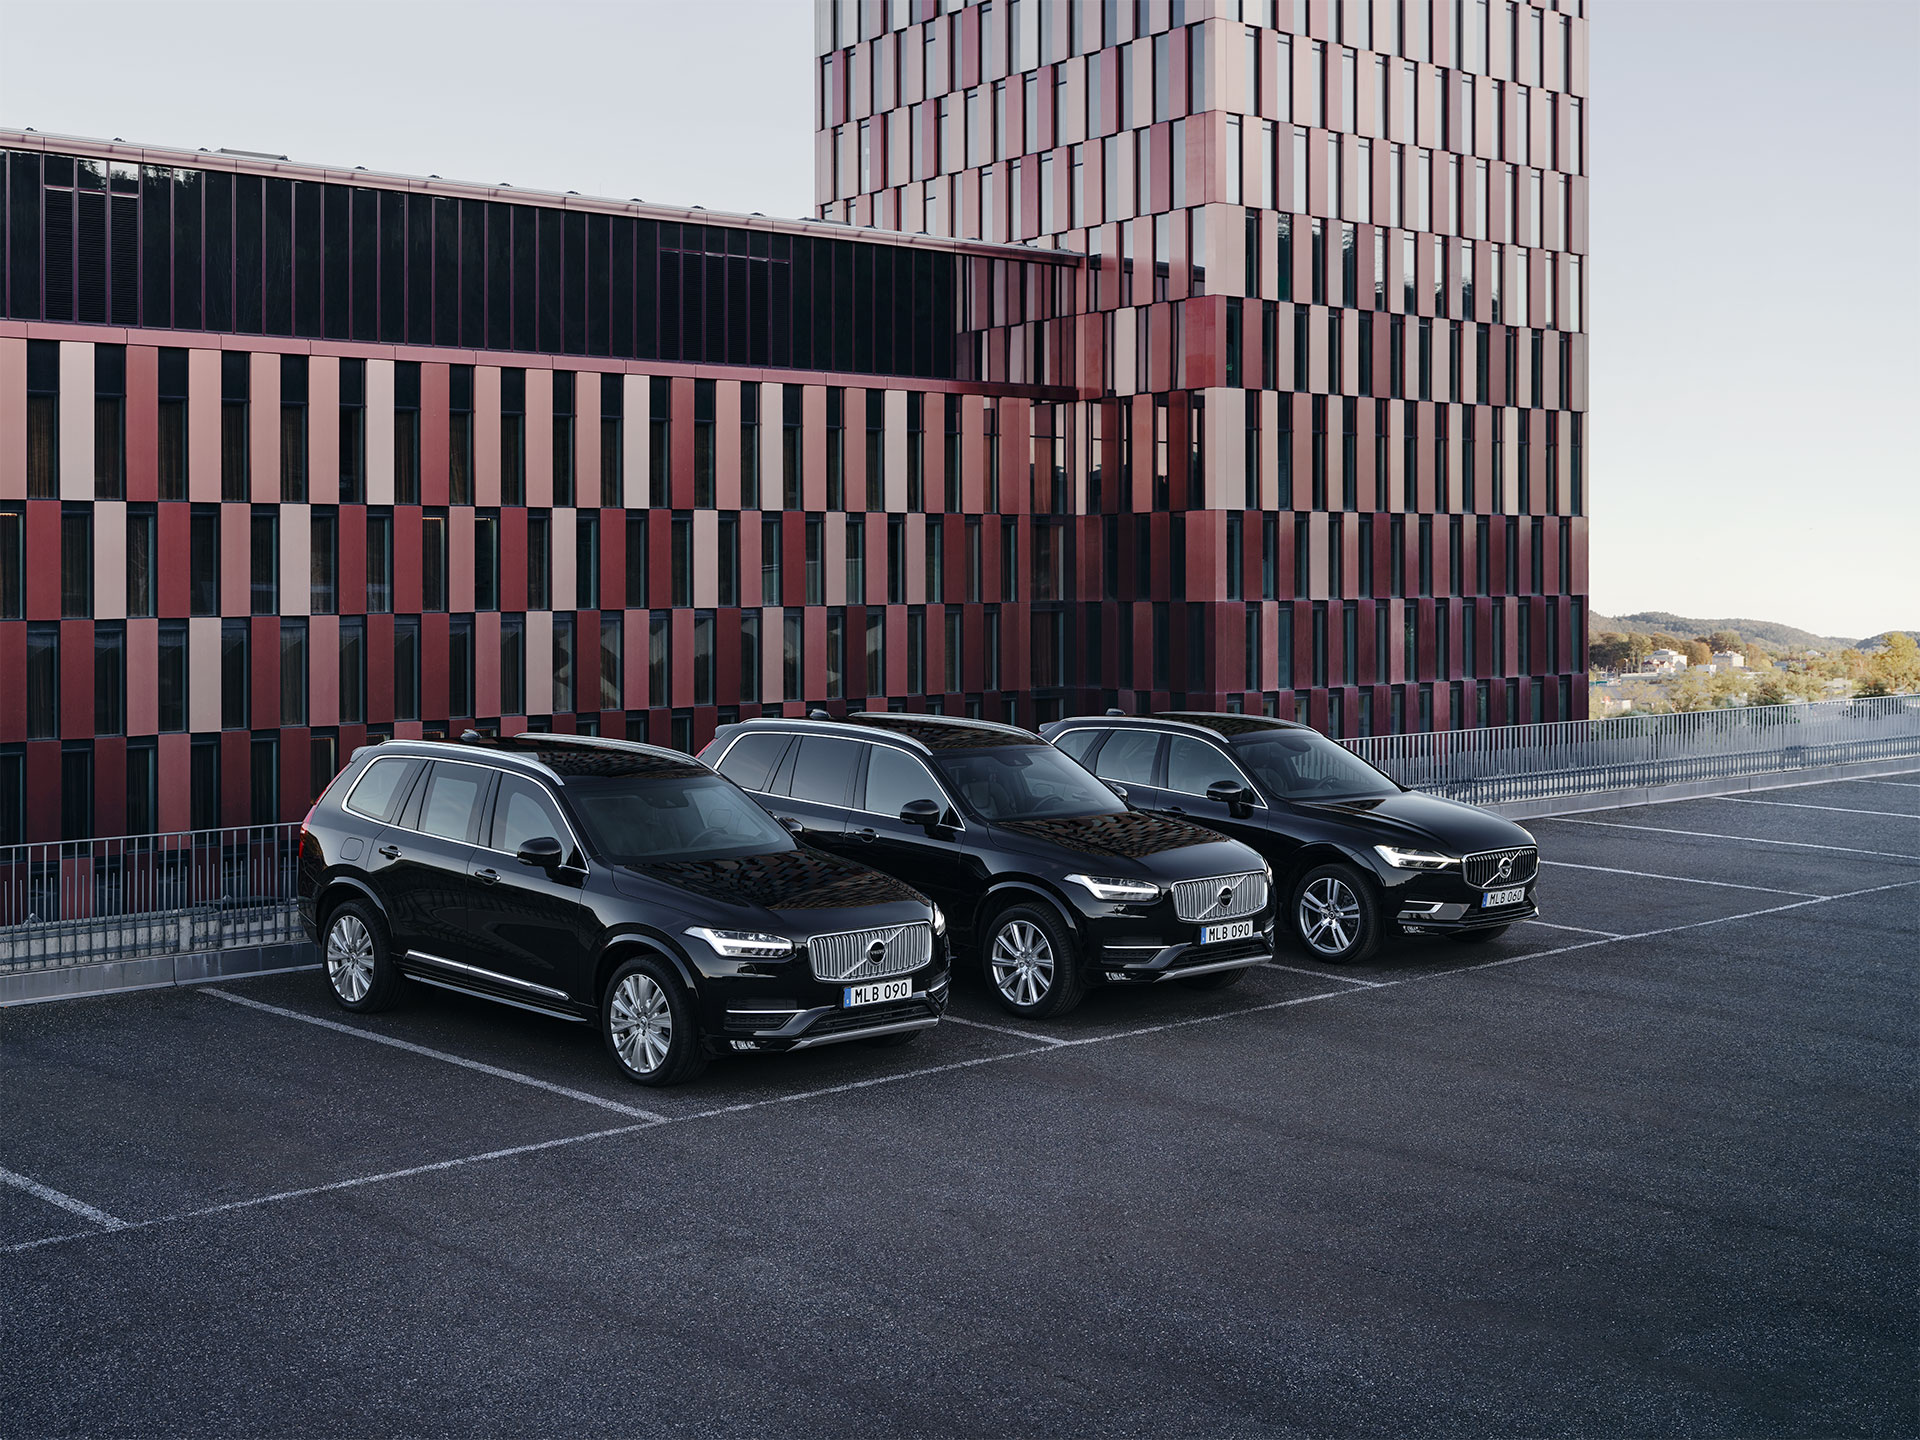 Den tungt bepansrade Volvo XC90 och de lätt bepansrade XC90 och XC60 parkerade utanför en officiell byggnad.